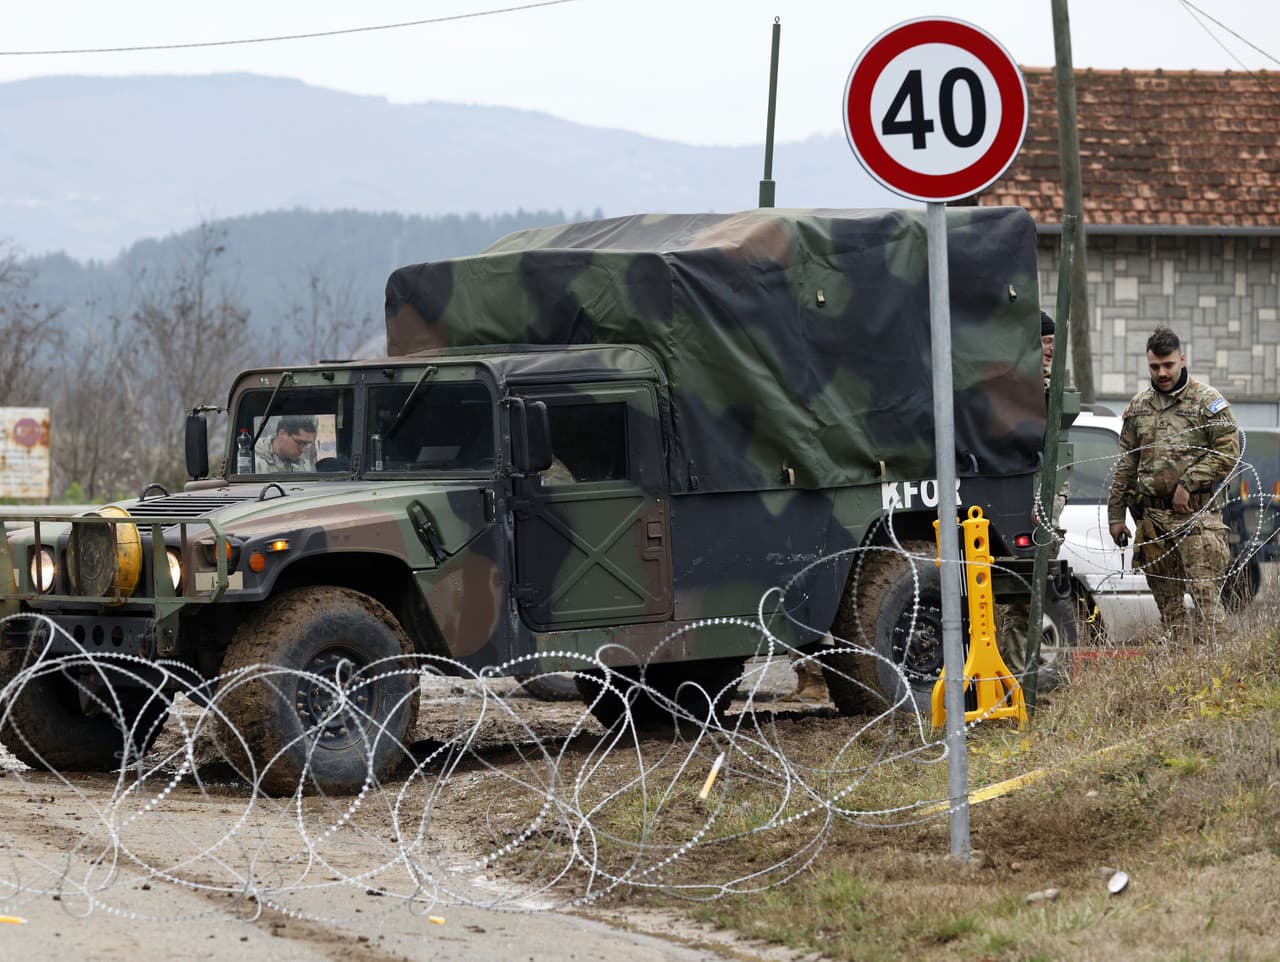 Napätie medzi Srbskom a Kosovom sa znovu rozhorelo počas minulého týždňa